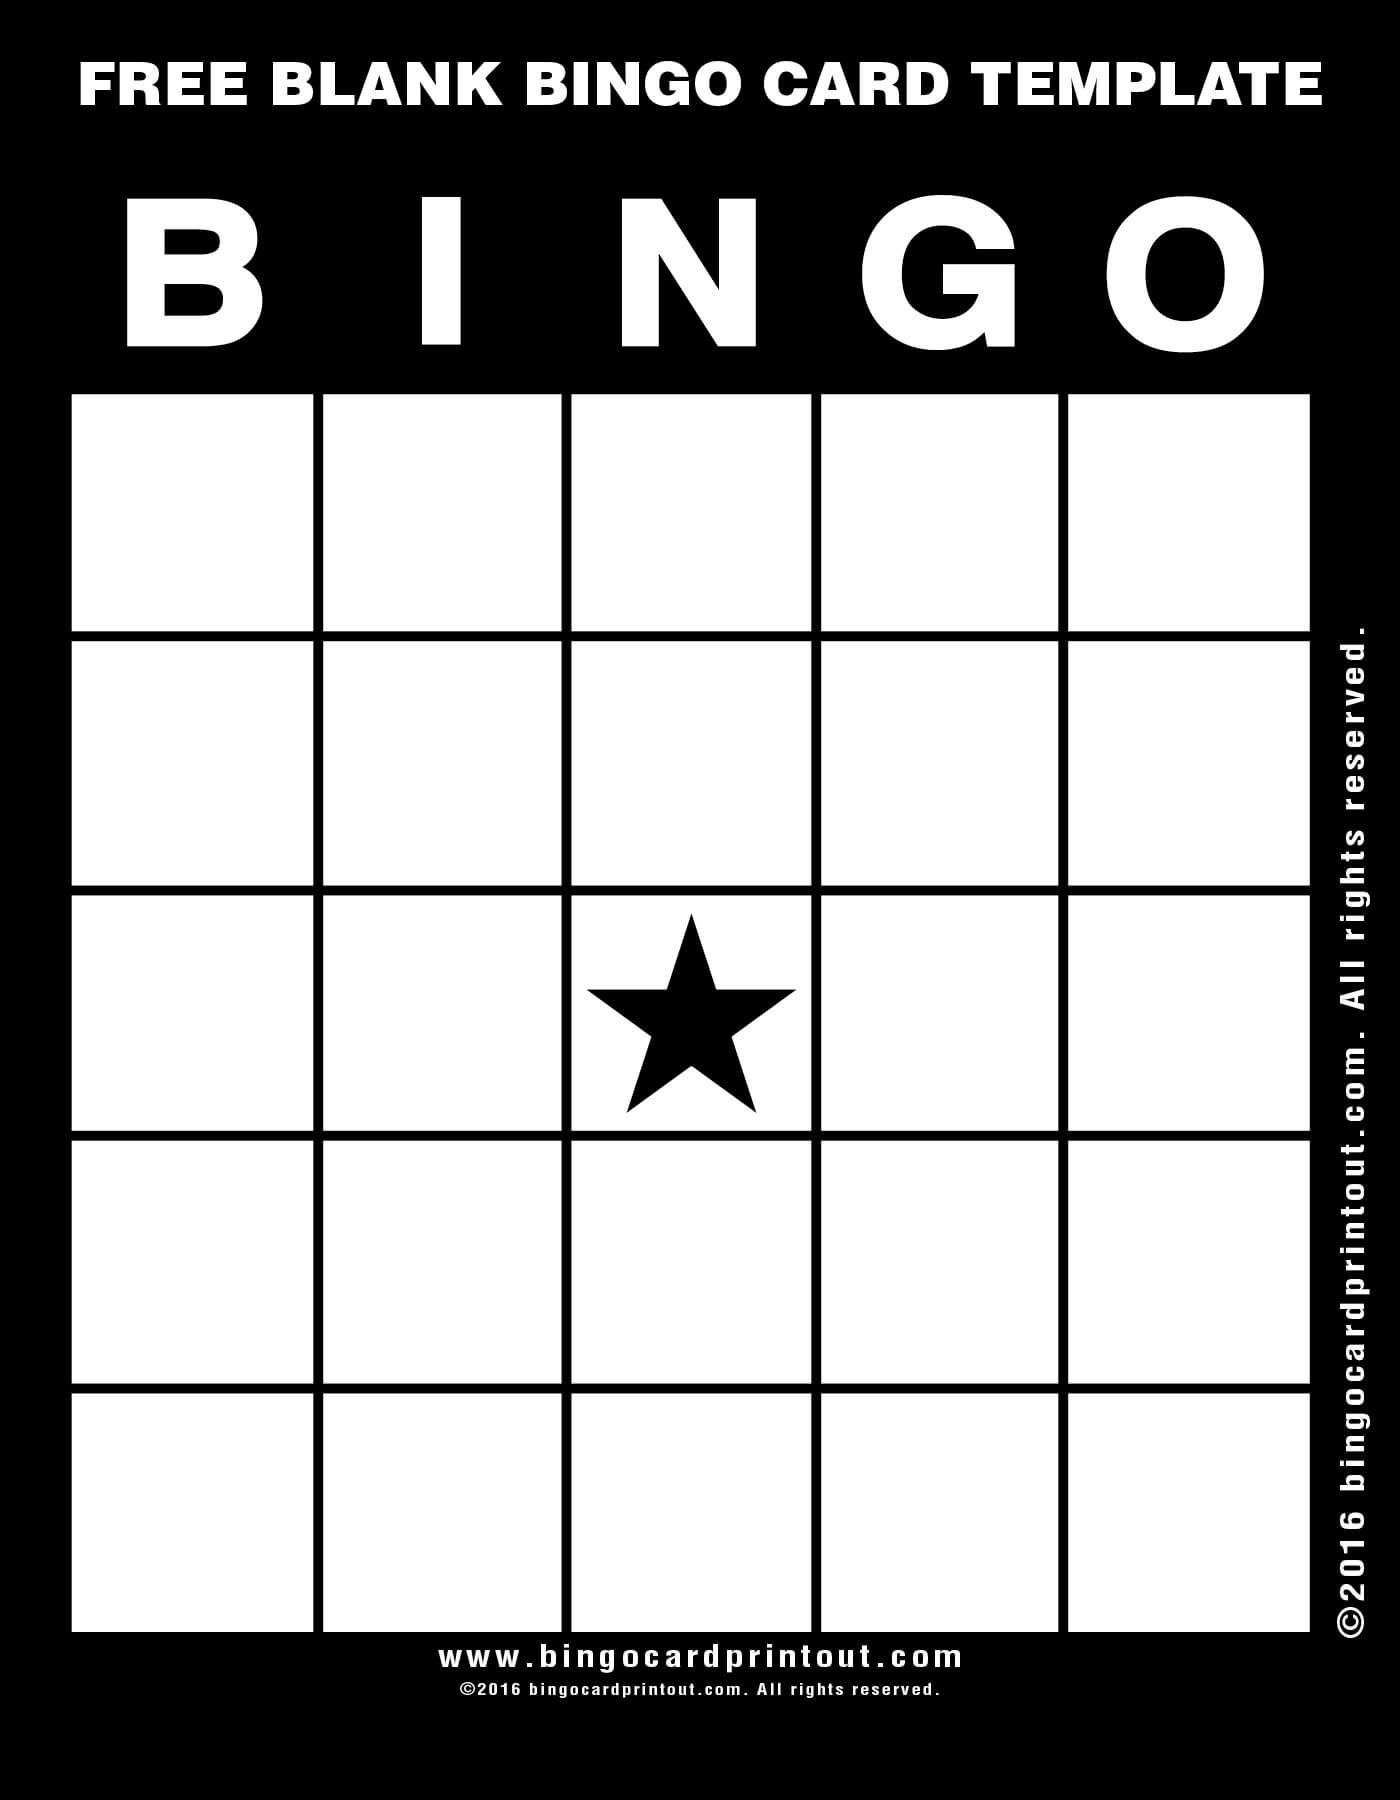 Bingo Template Free ] – Blank Bingo Template 15 Free Psd With Bingo Card Template Word